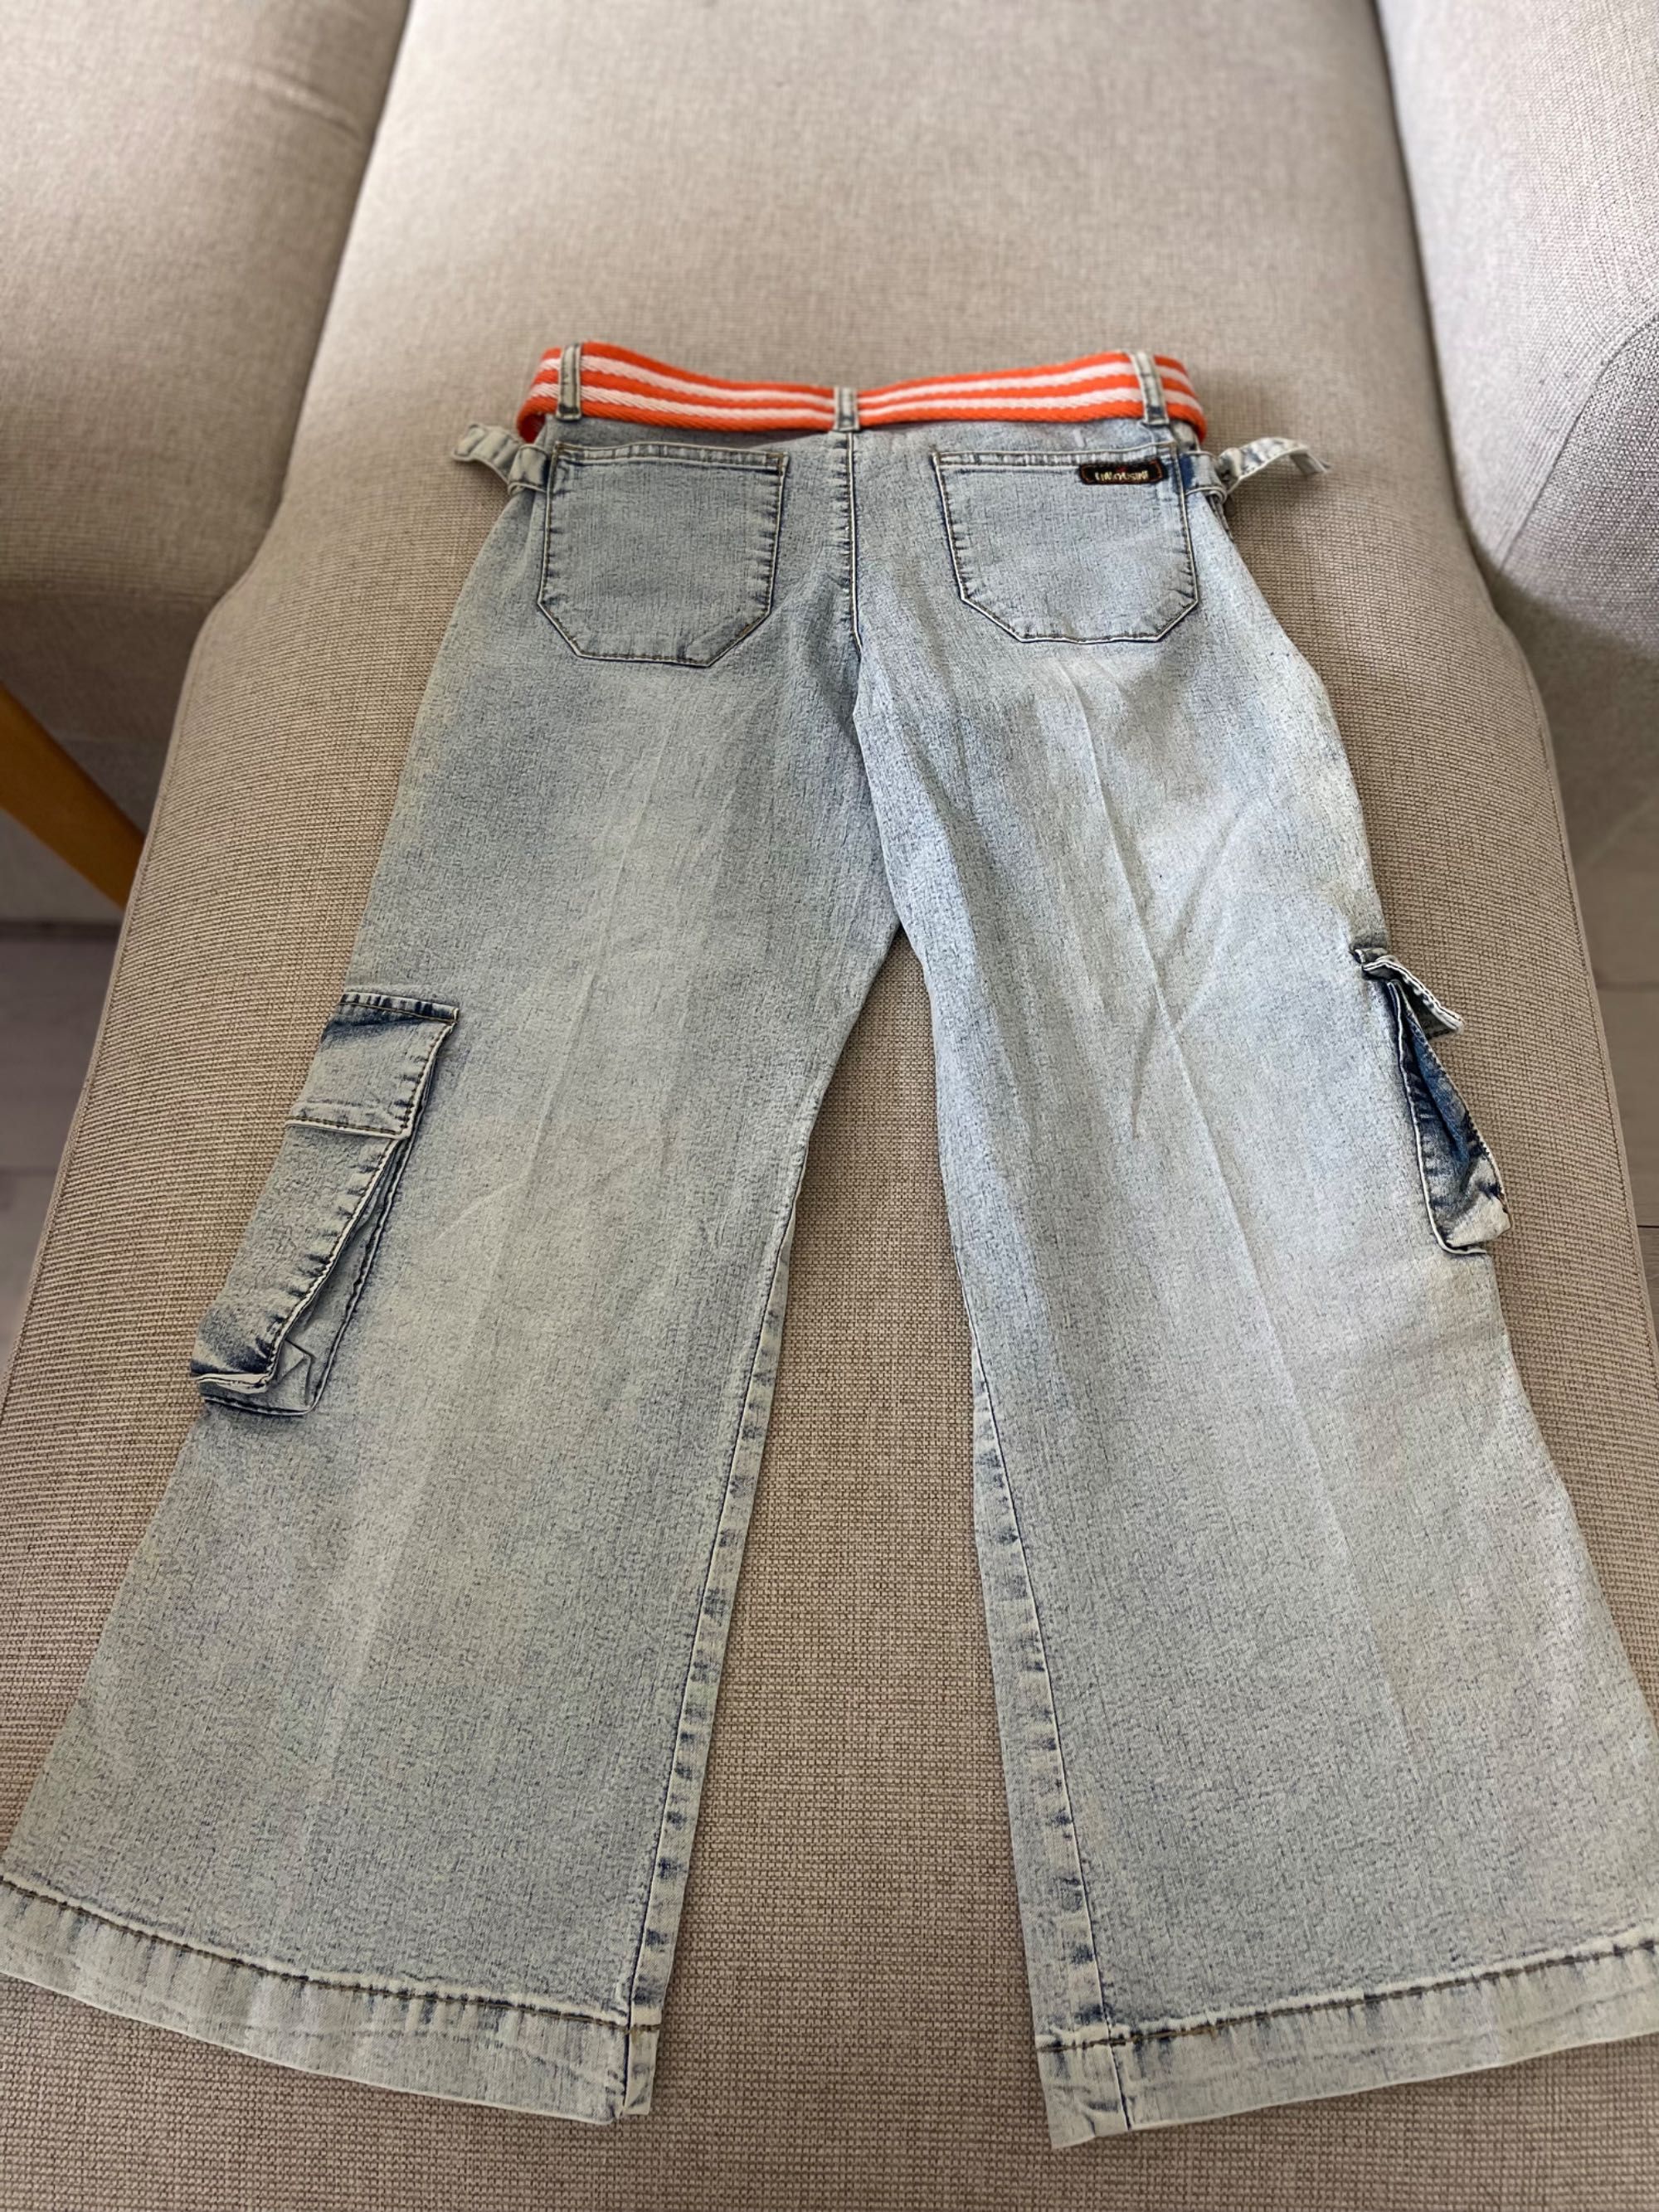 Новые джинсы укороченные на подростка